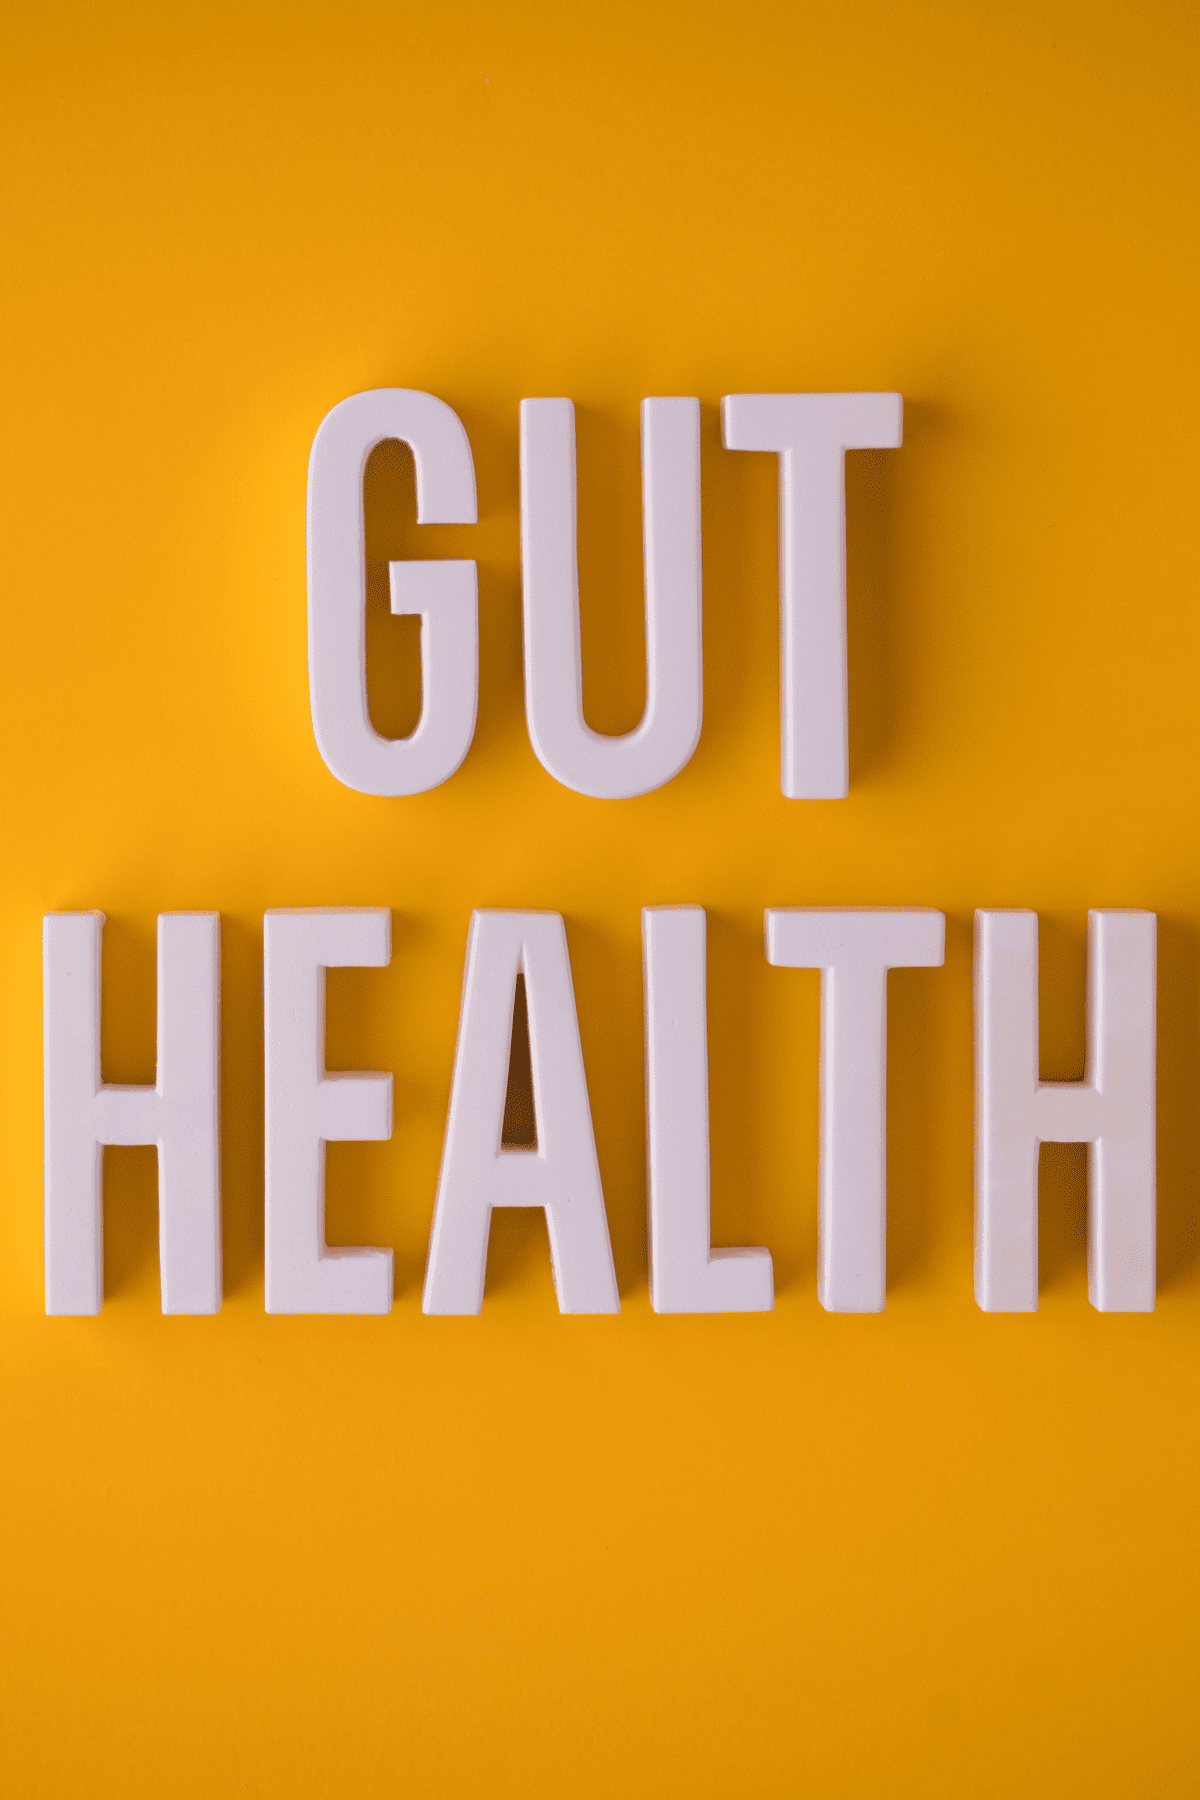 a sigh that reads "gut health"